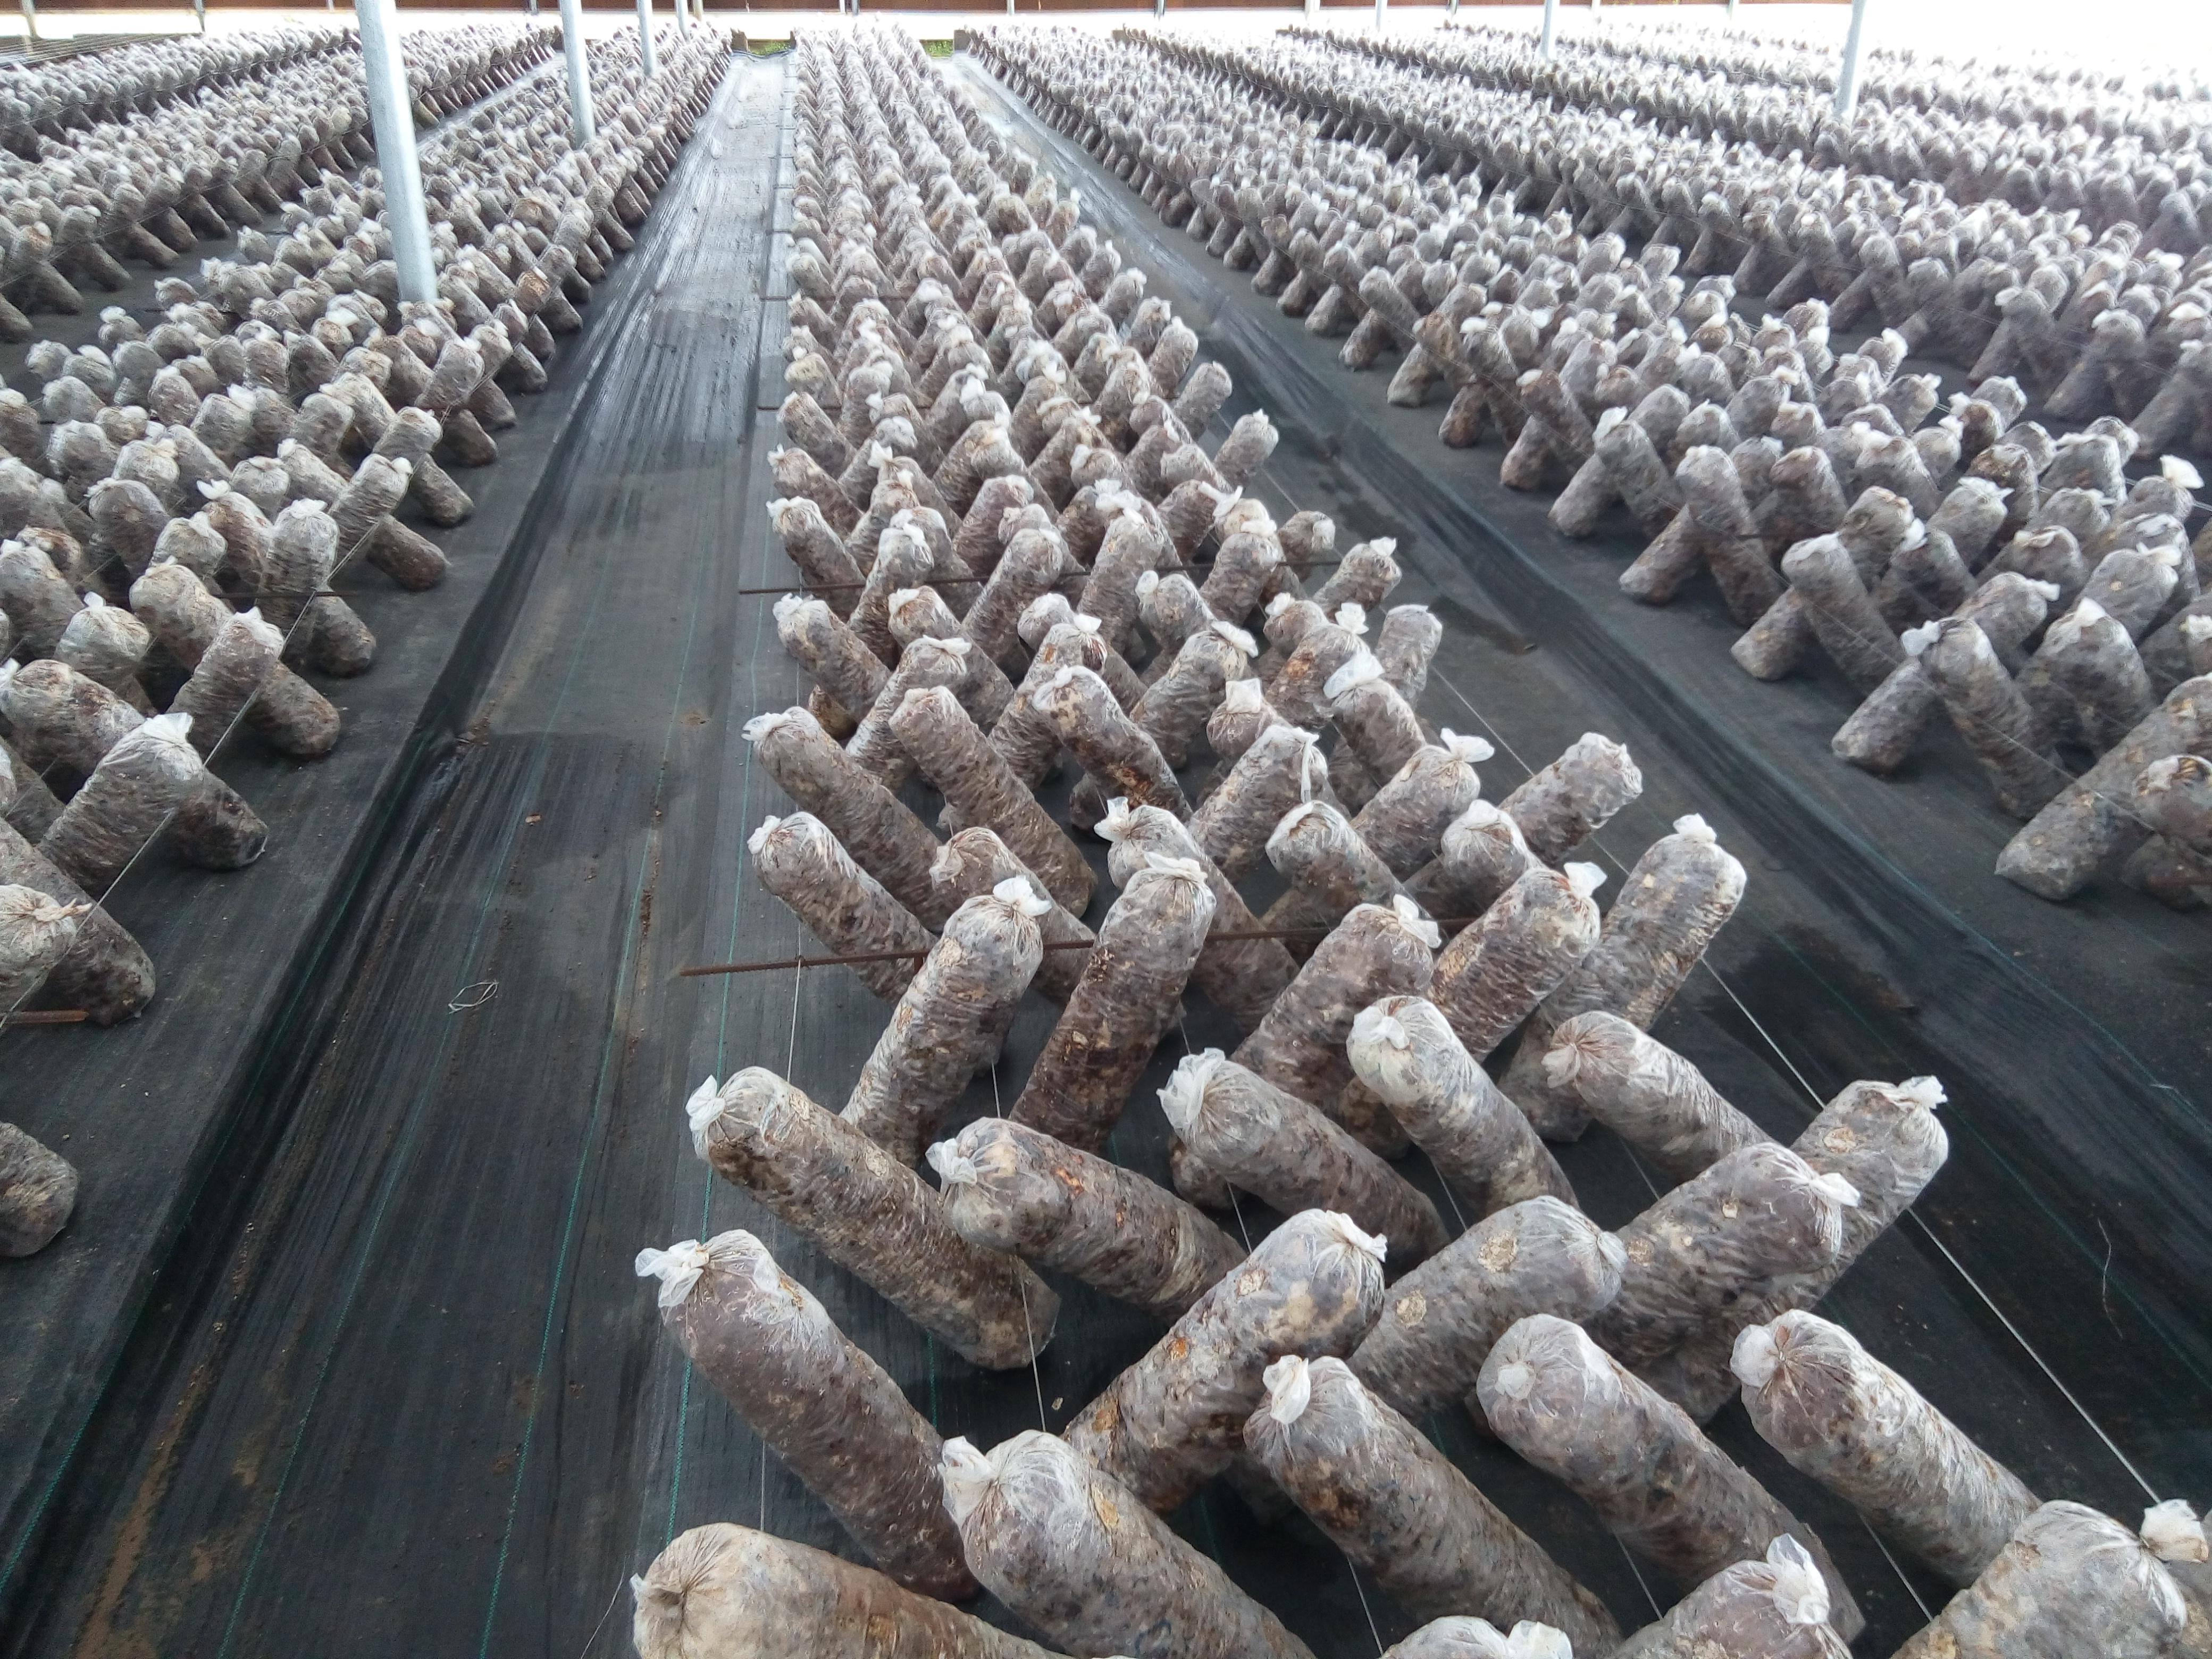 香菇种植技术 香菇种植一点通 如何栽培香菇教程_哔哩哔哩 (゜-゜)つロ 干杯~-bilibili